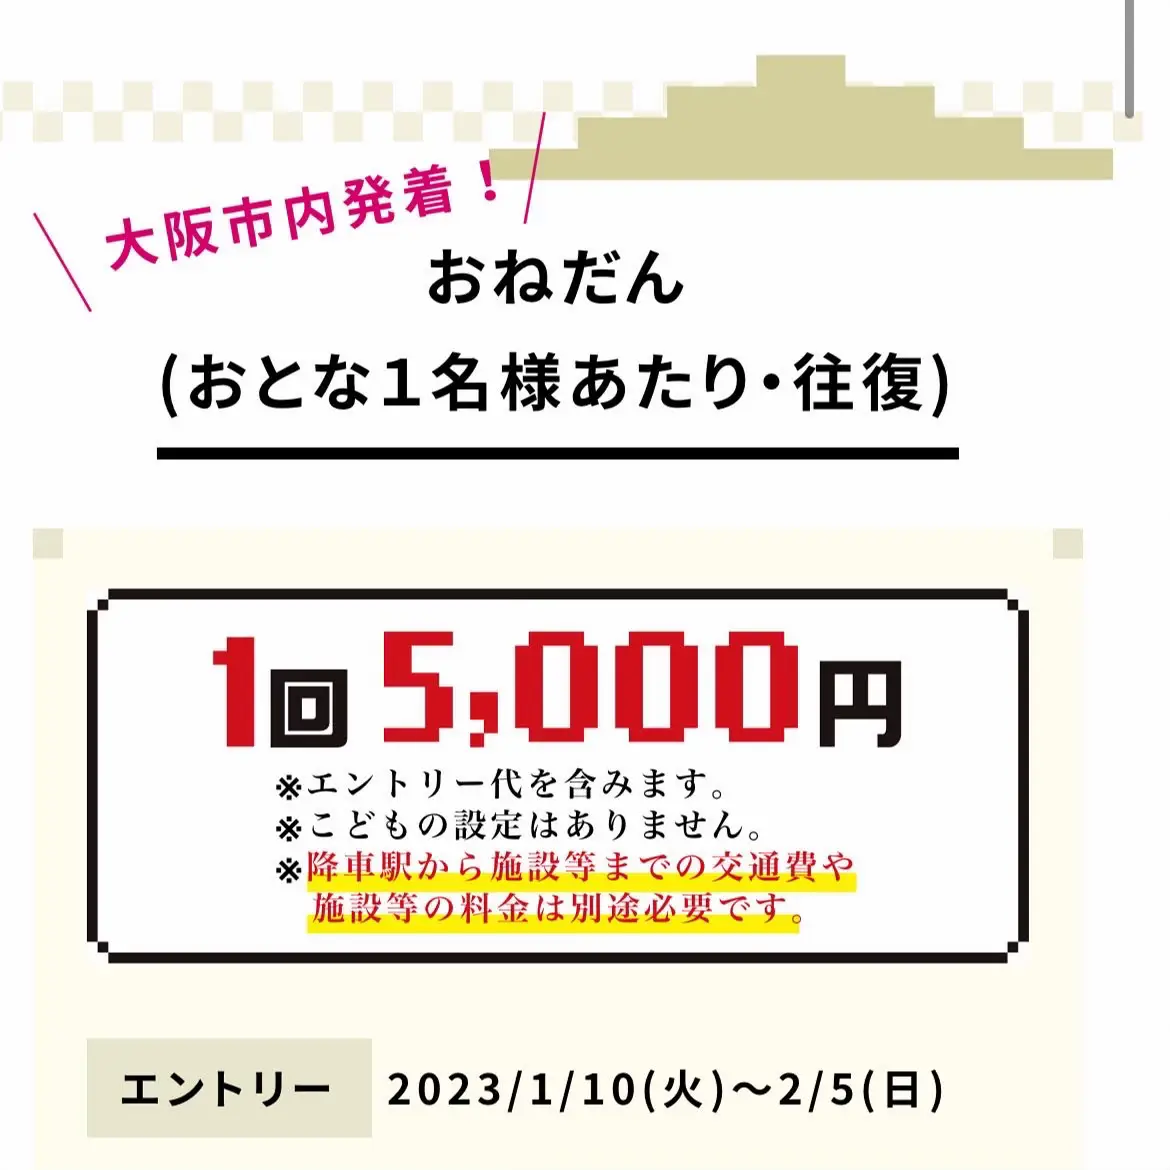 サイコロきっぷ 白浜 往復 2名 指定券 9/30〜10/1 - チケット